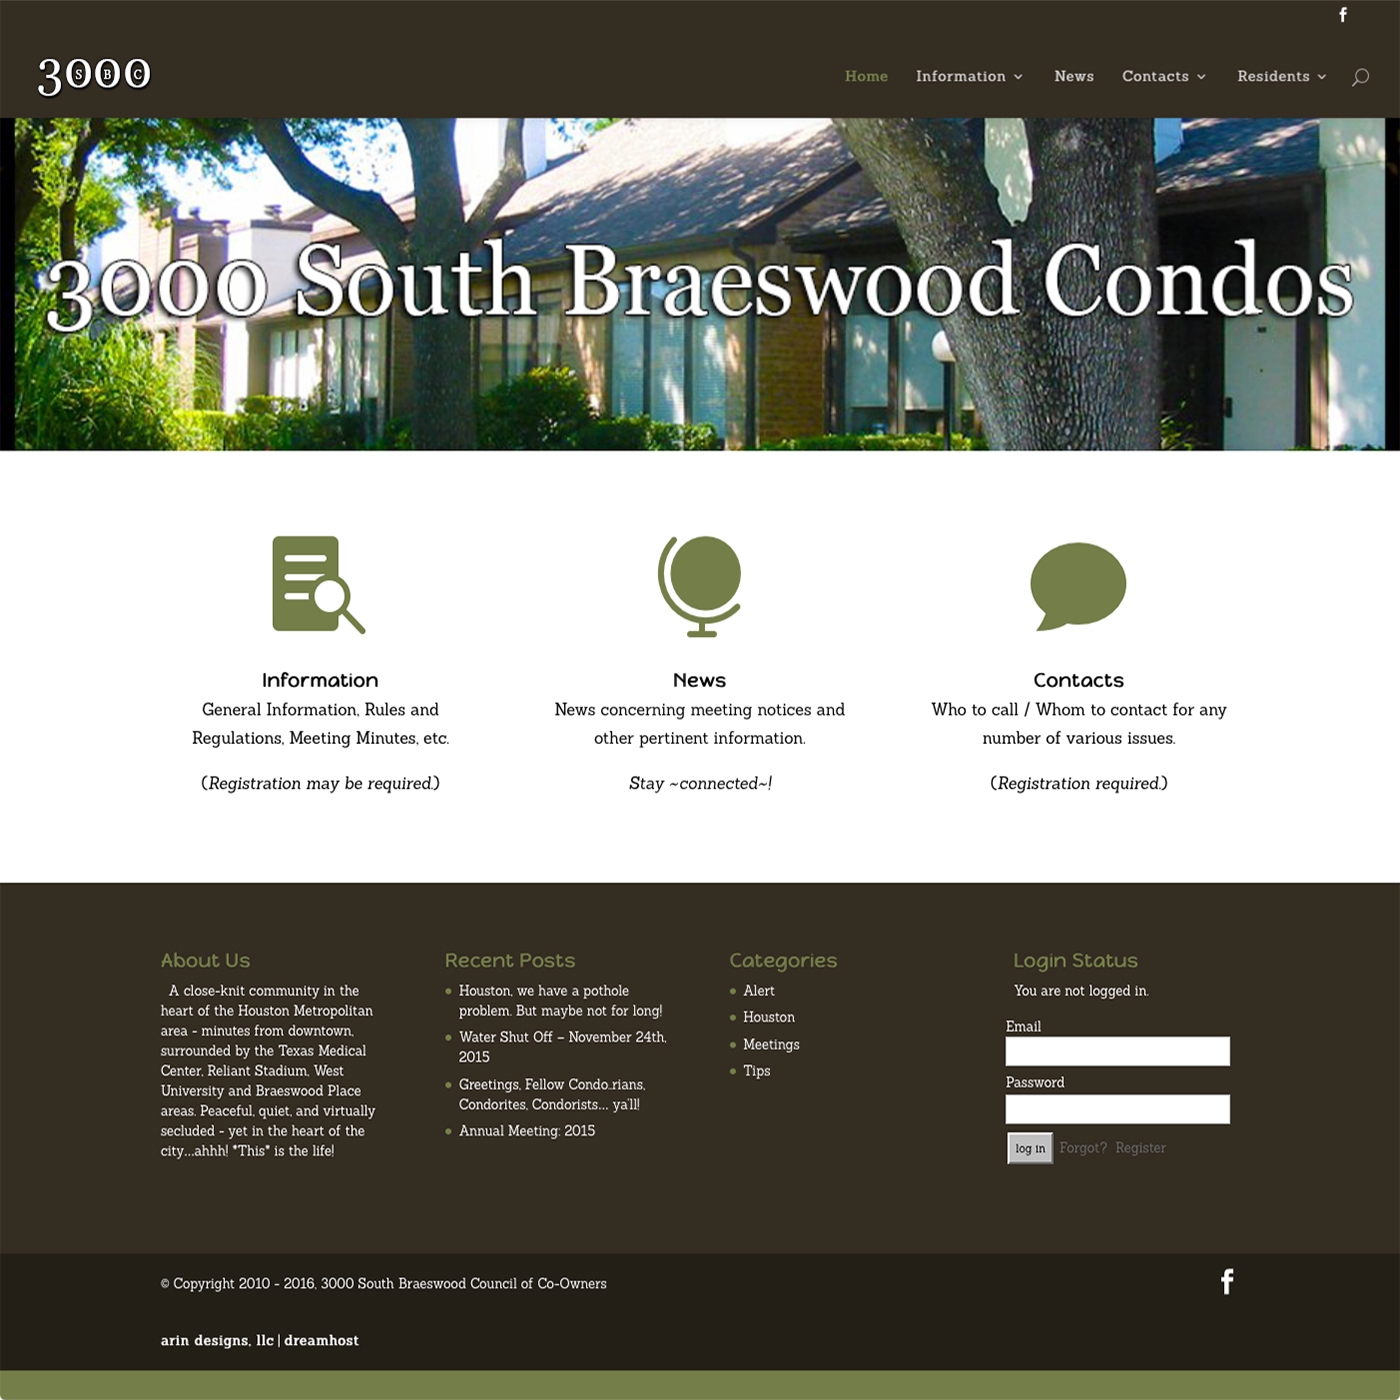 southbraeswoodcondos.com